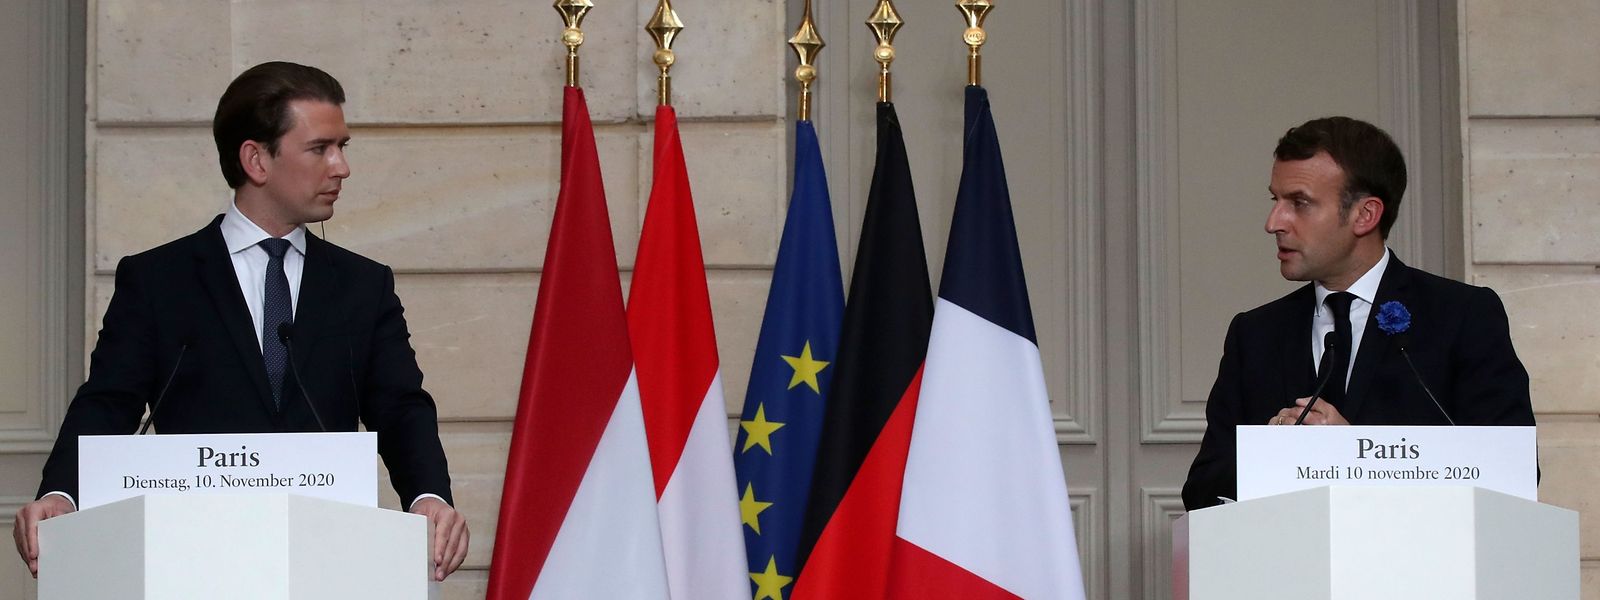 Österreichs Kanzler Sebastian Kurz (l.) legte am Dienstag einen Schwerpunkt auf ein strikteres Vorgehen gegen aus dem Ausland zurückgekehrte radikale Islamisten.